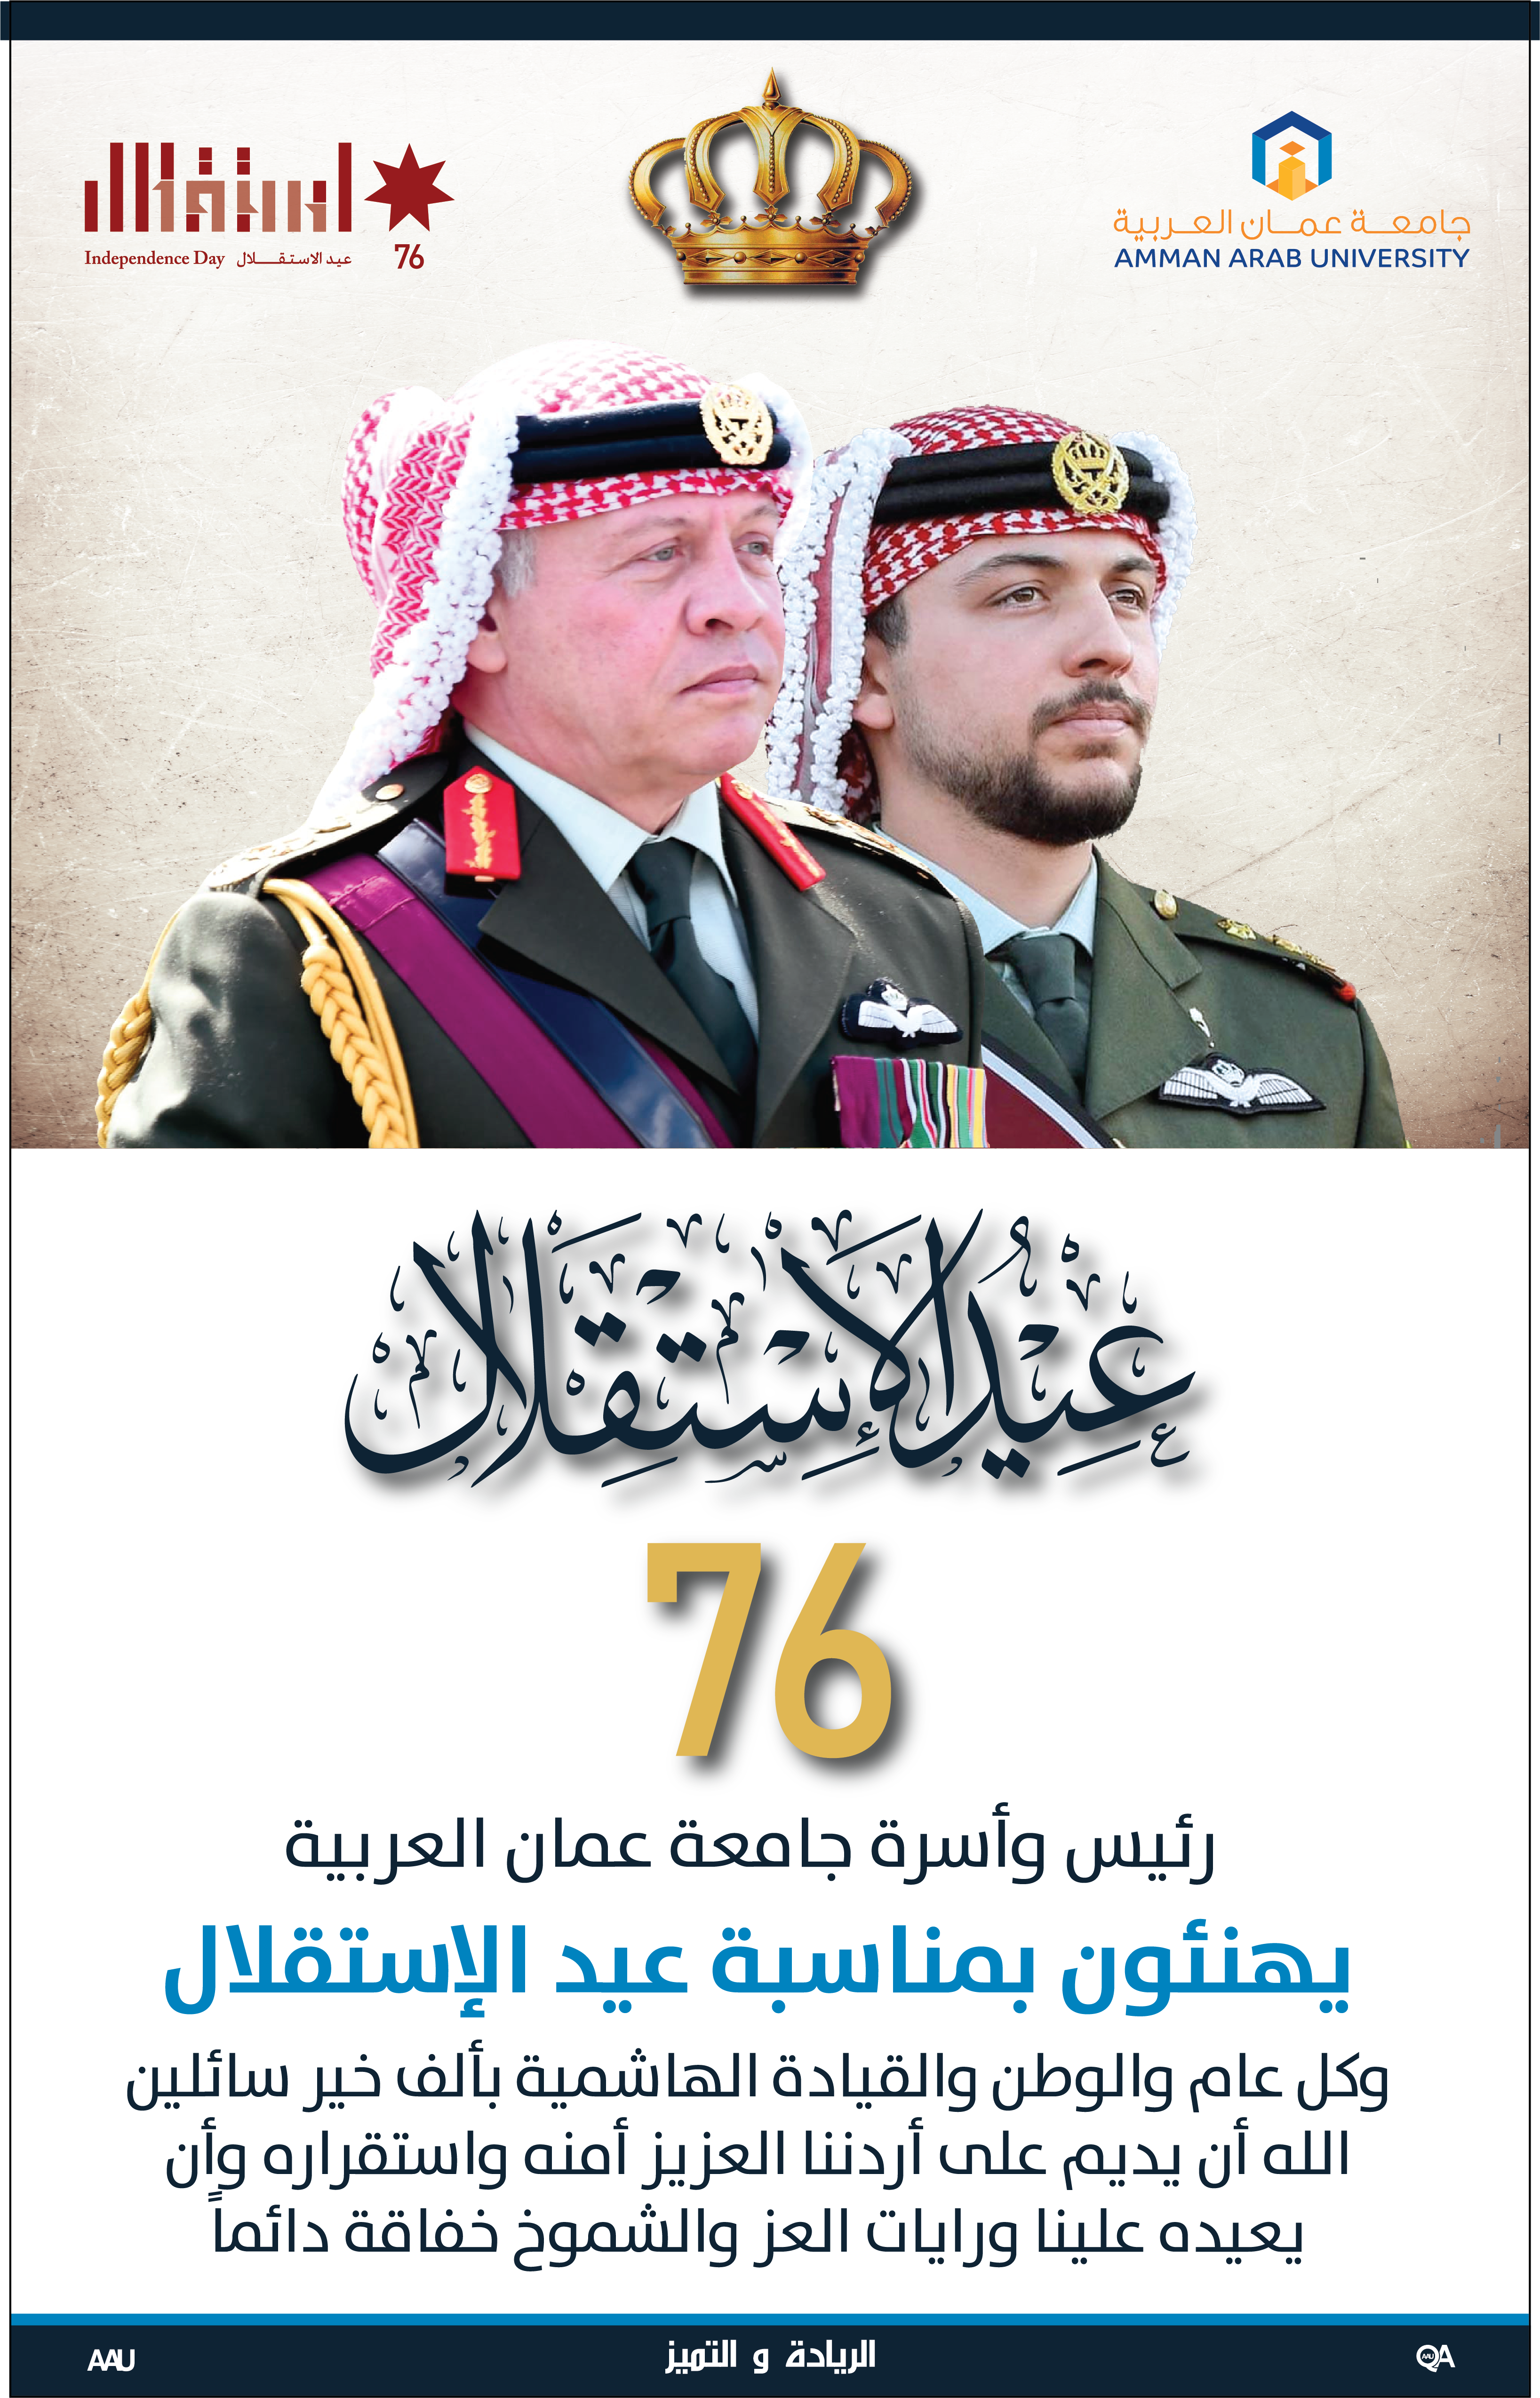 رئيس وأسرة جامعة عمان العربية يهنئون بمناسبة عيد الإستقلال وكل عام والوطن والقيادة الهاشمية بألف خير‎‎